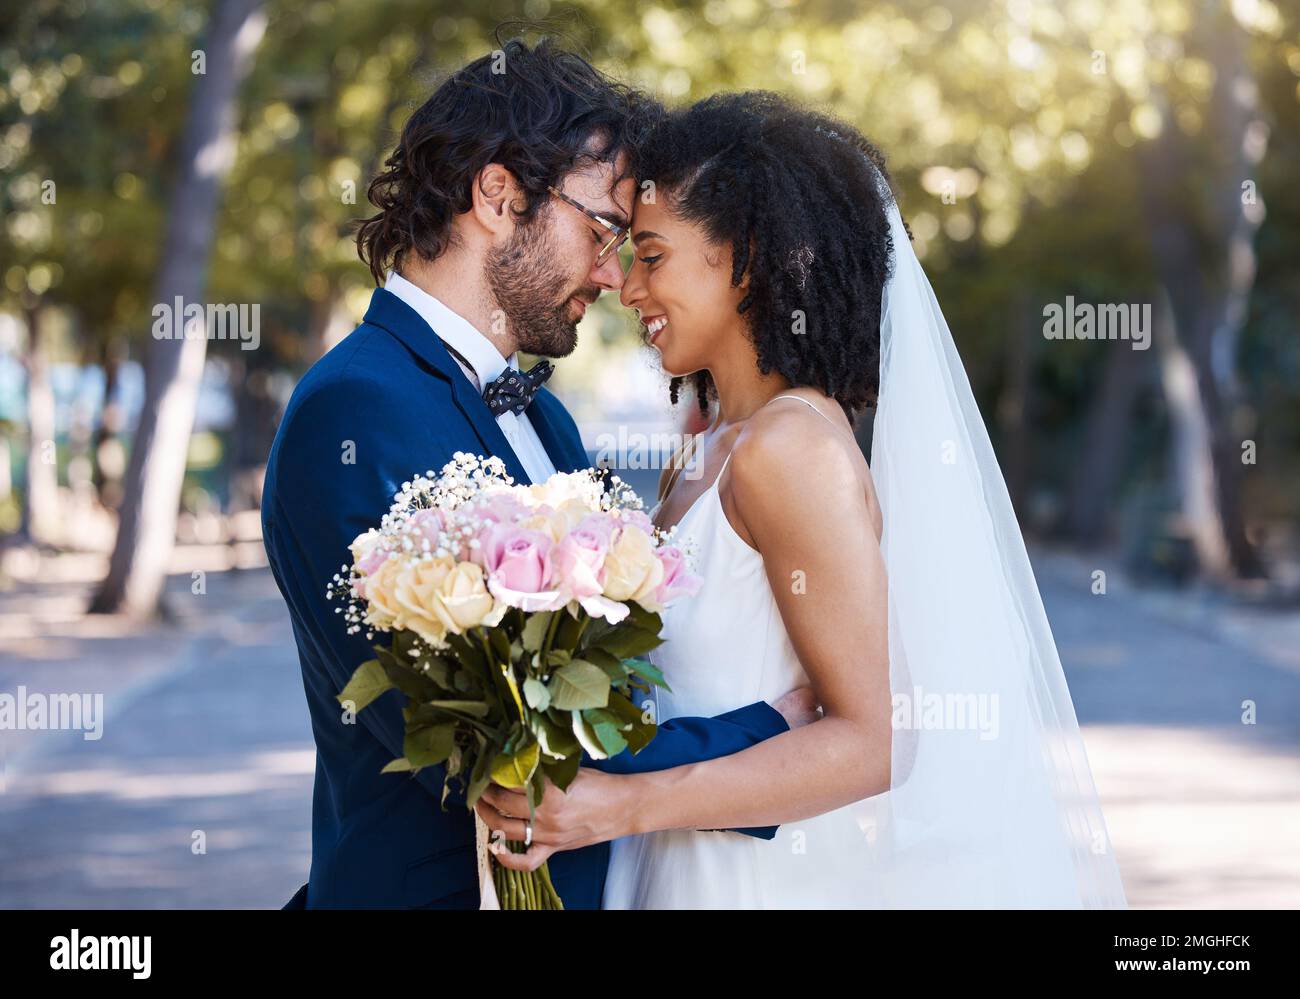 Coppia sposata, fiore bokeh e sorriso per impegno, matrimonio o amore insieme nel parco. Buon sposo e sposa sorridente in felicità per la luna di miele Foto Stock